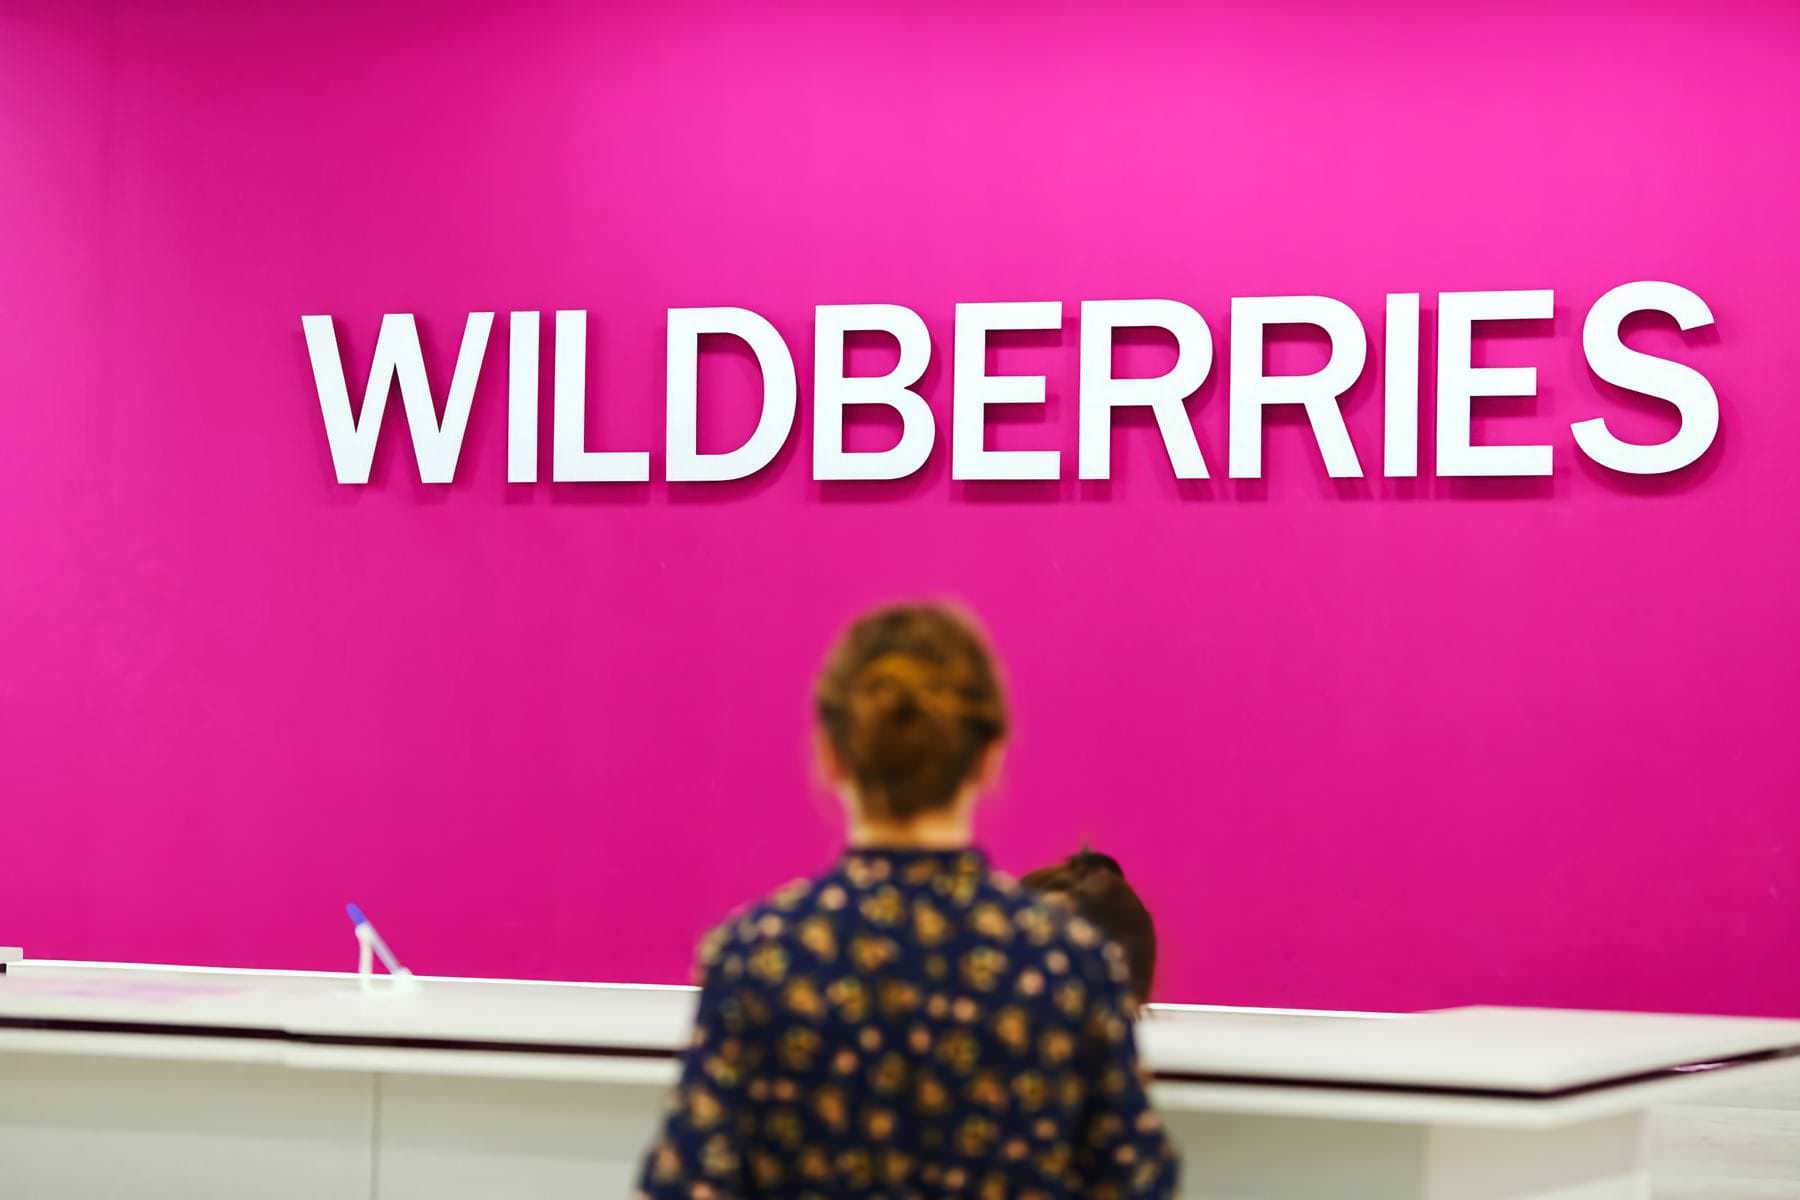 Wildberries массово незаконно опустошает банковские карты россиян. Это беспредел